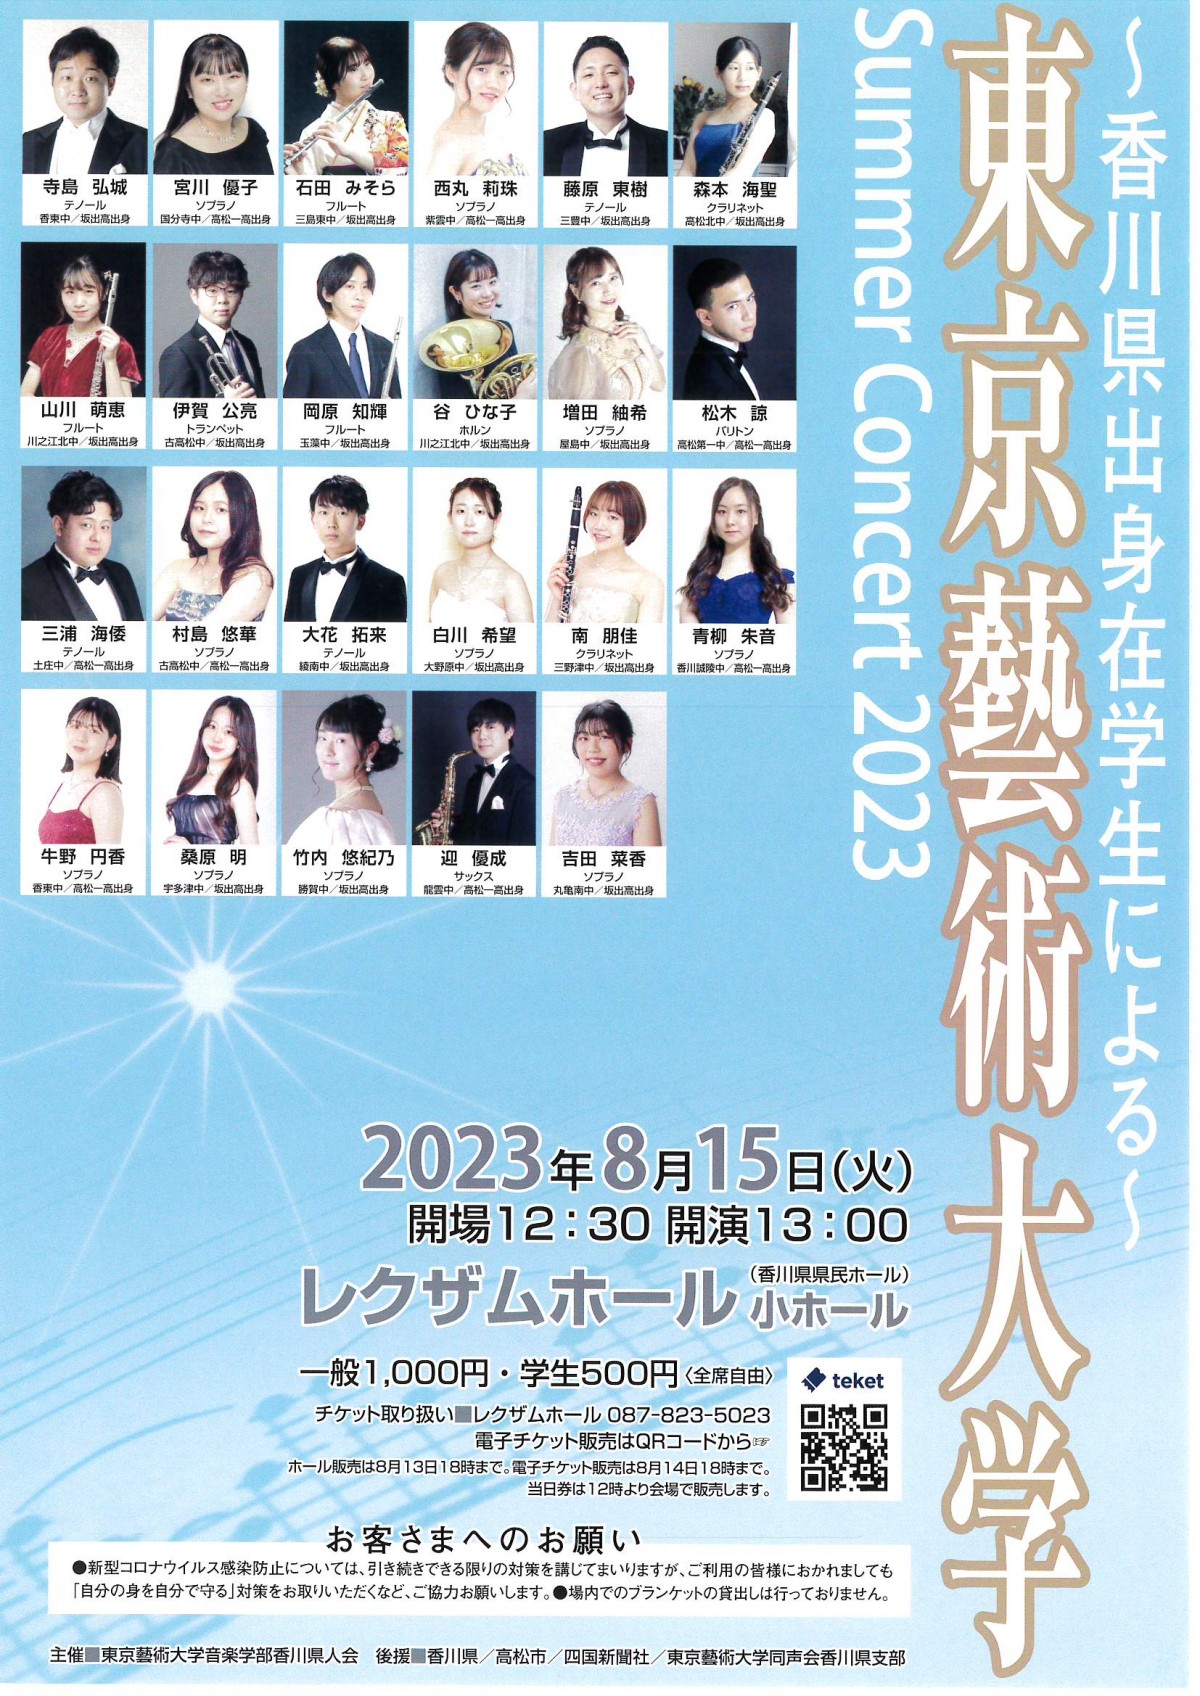 東京藝術大学 Summer Concert 2023